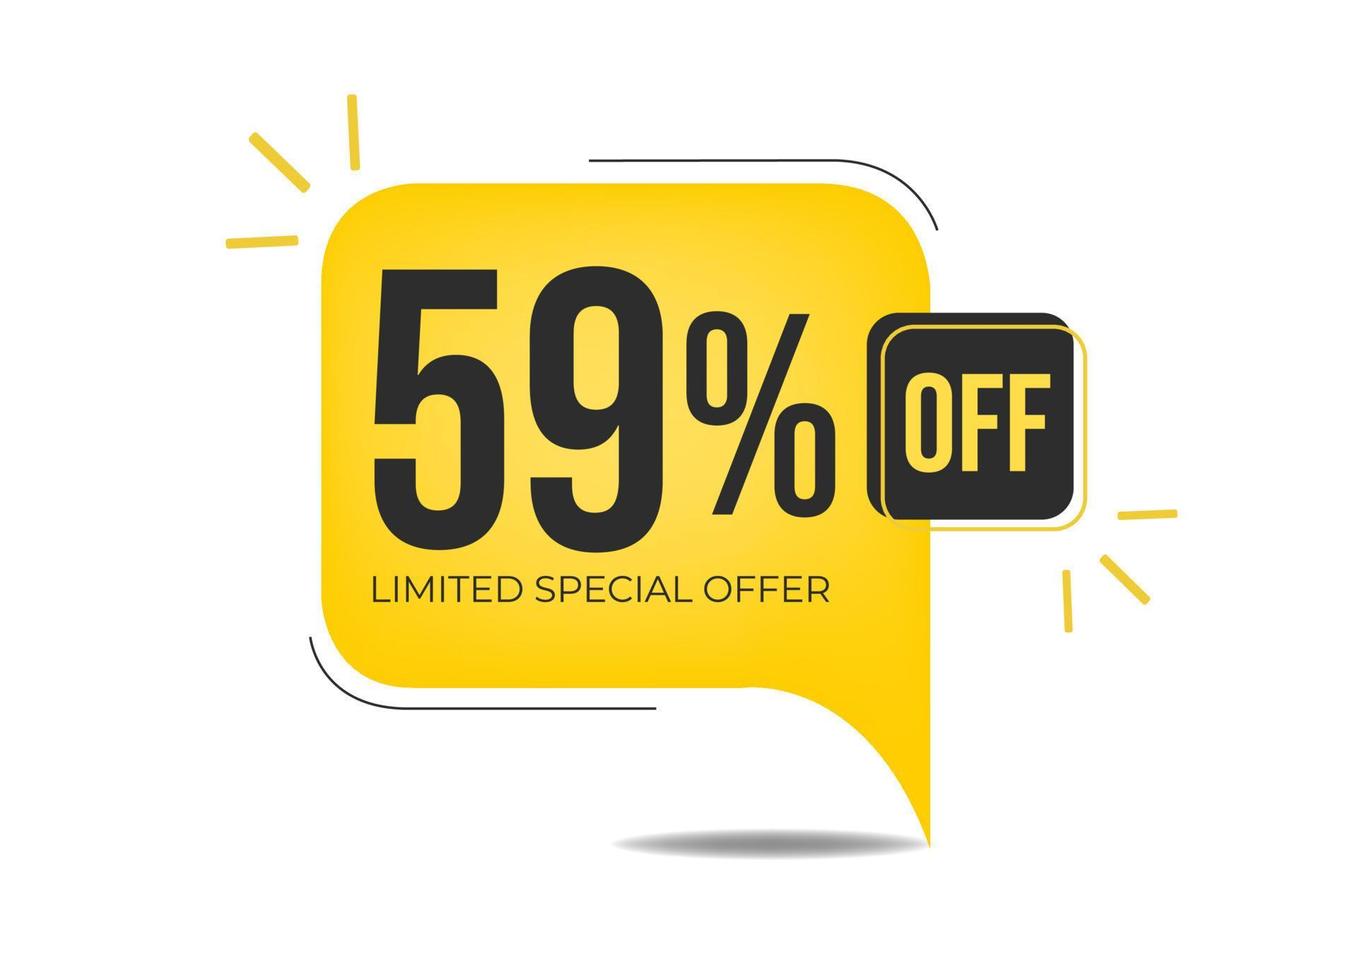 59 de descuento en oferta especial limitada. banner con cincuenta y nueve por ciento de descuento en un globo amarillo. vector